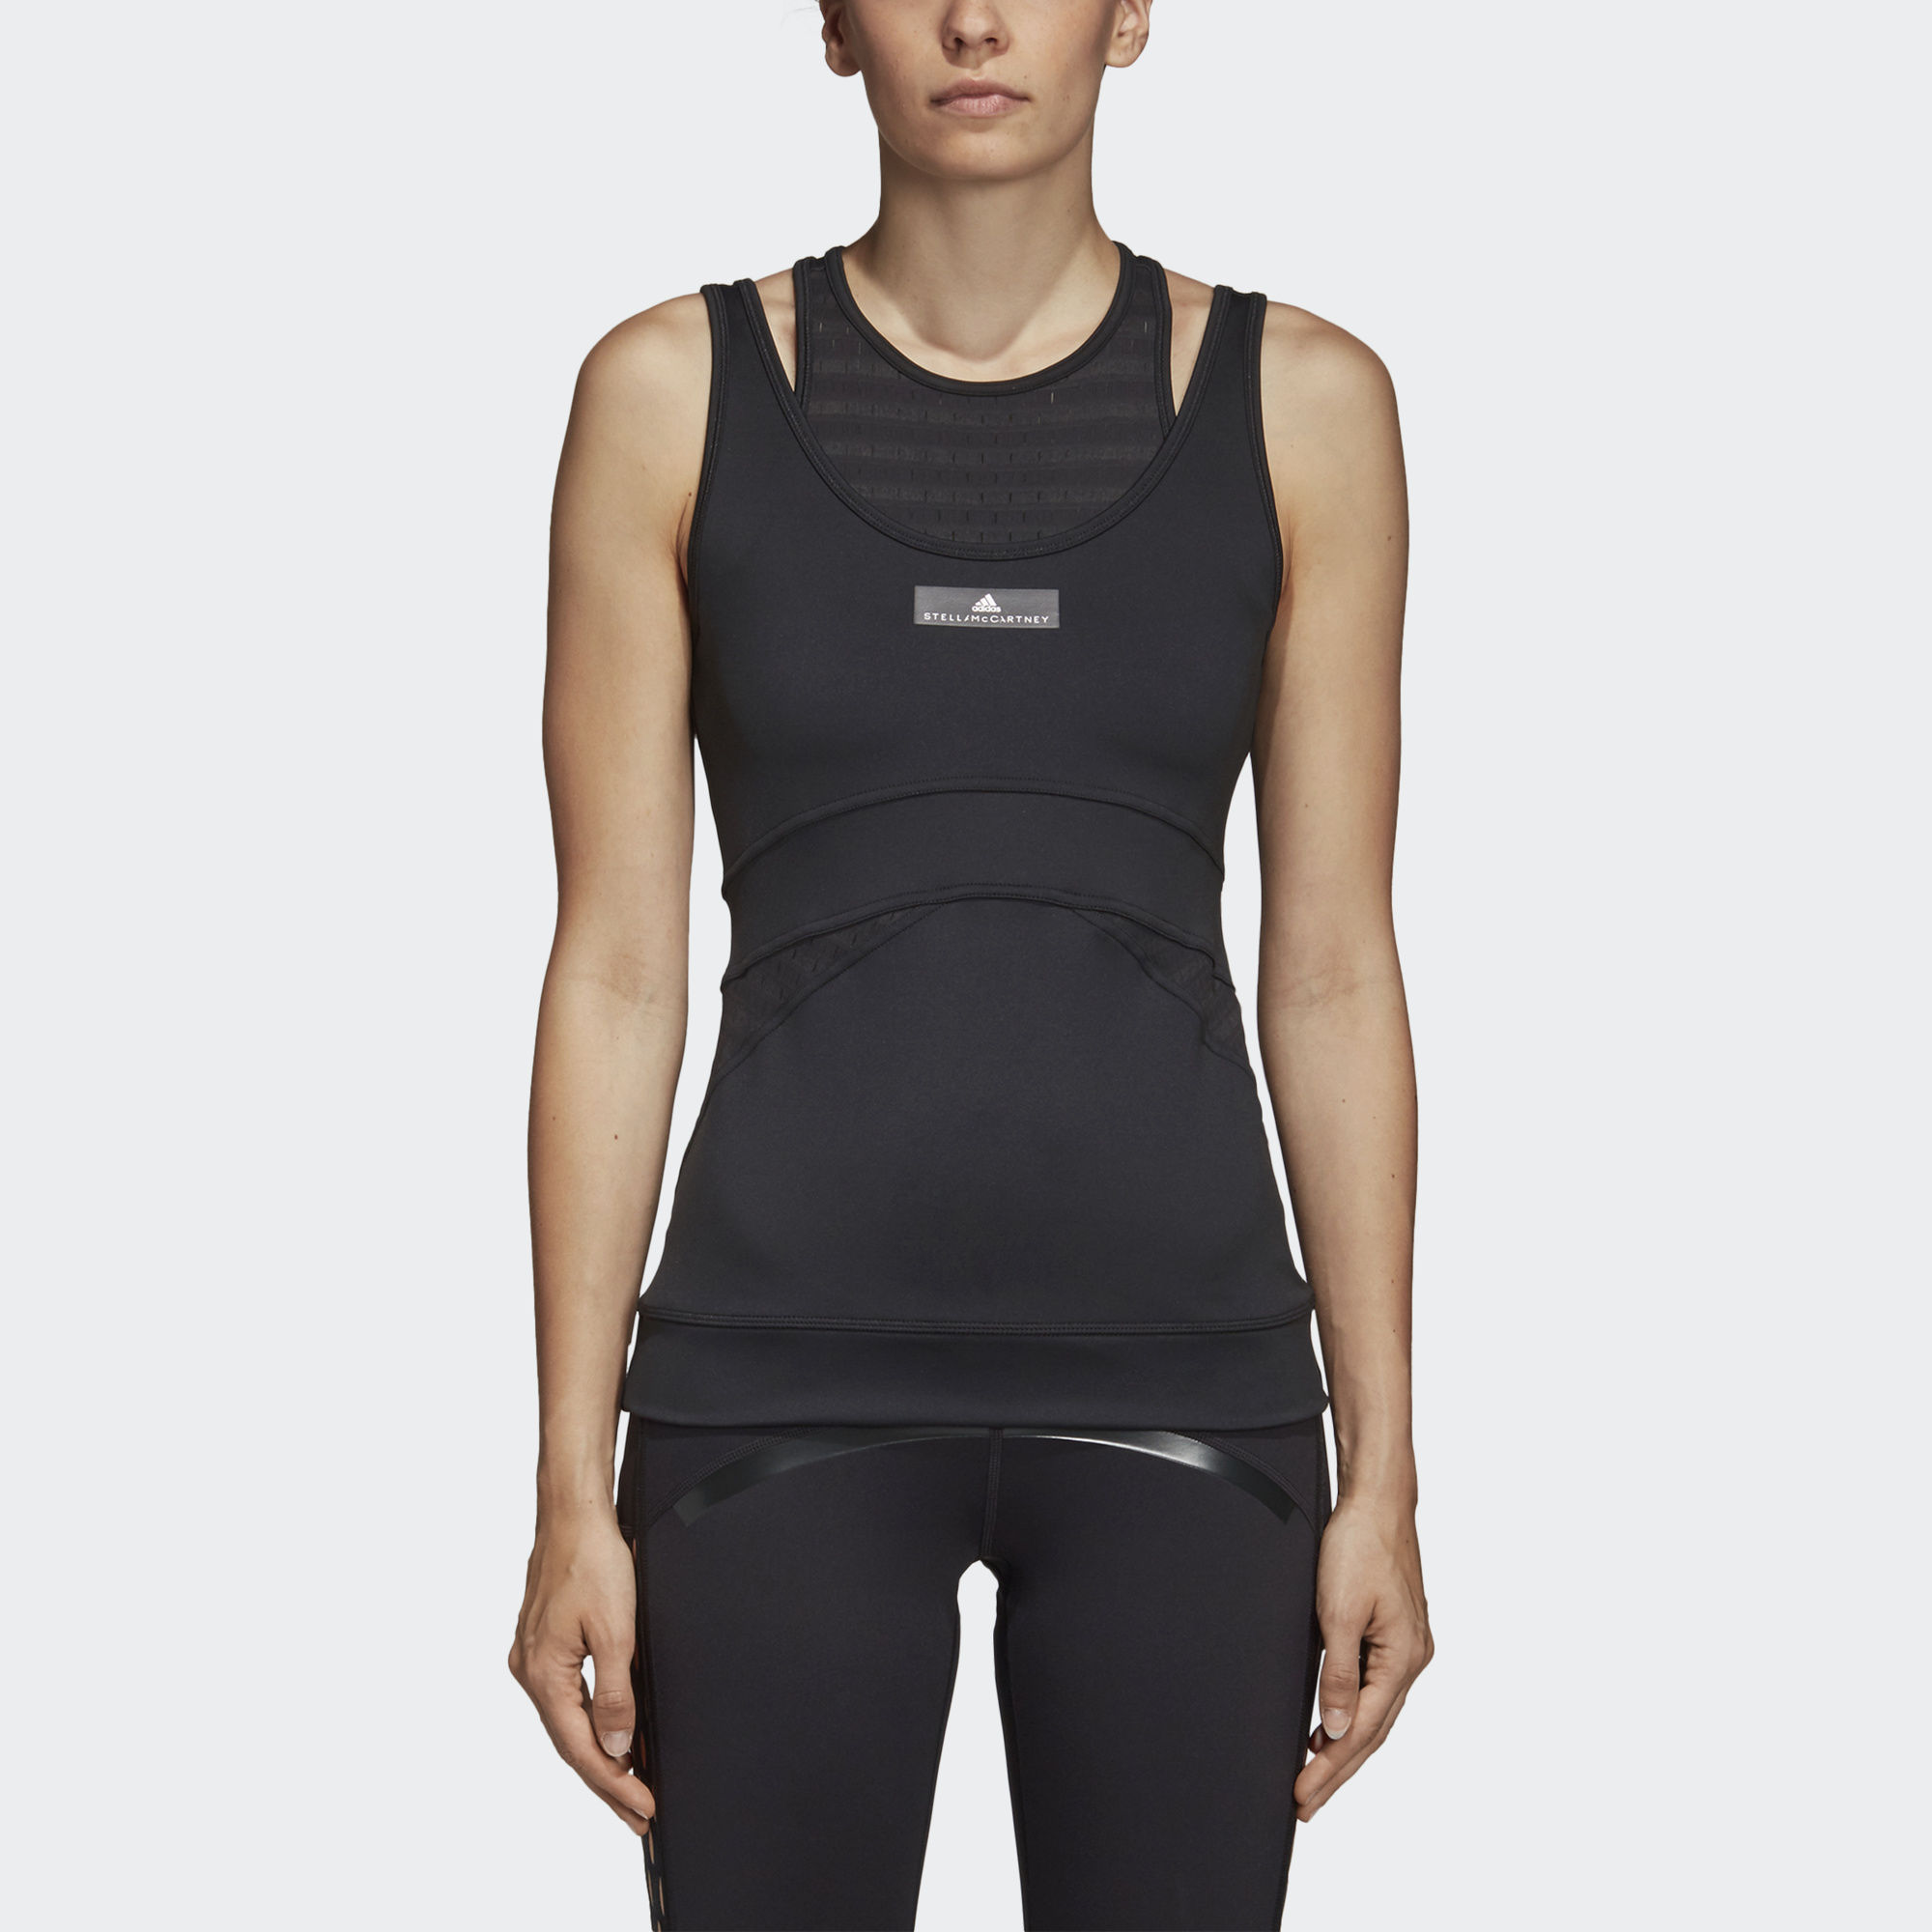 Adidas by Stella McCartney: Sleek and Sexy Athletic Wear